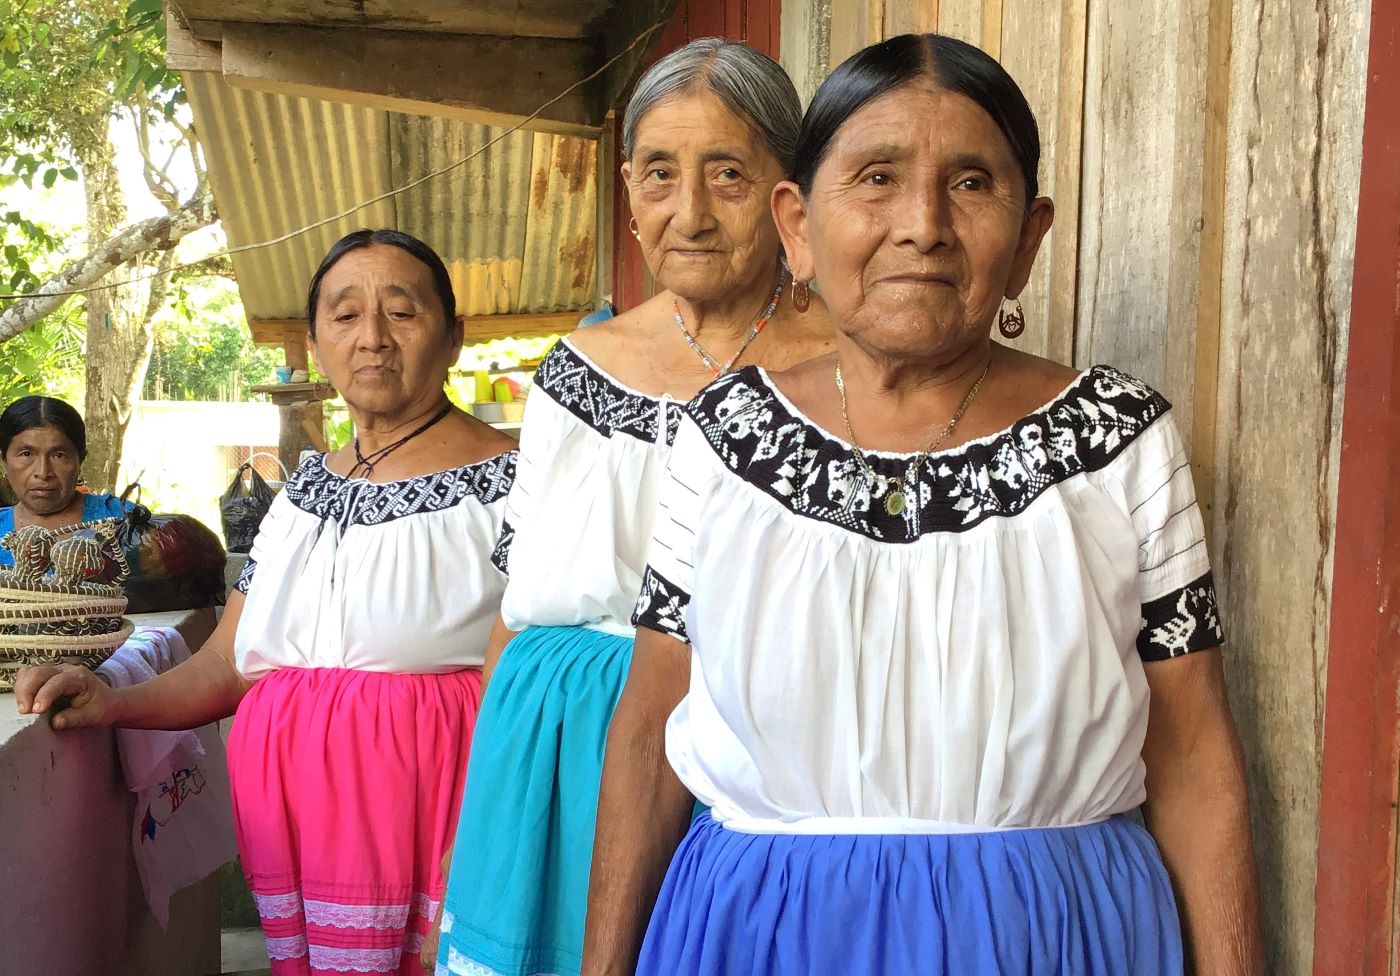 Mayan women in Belize in traditional wear